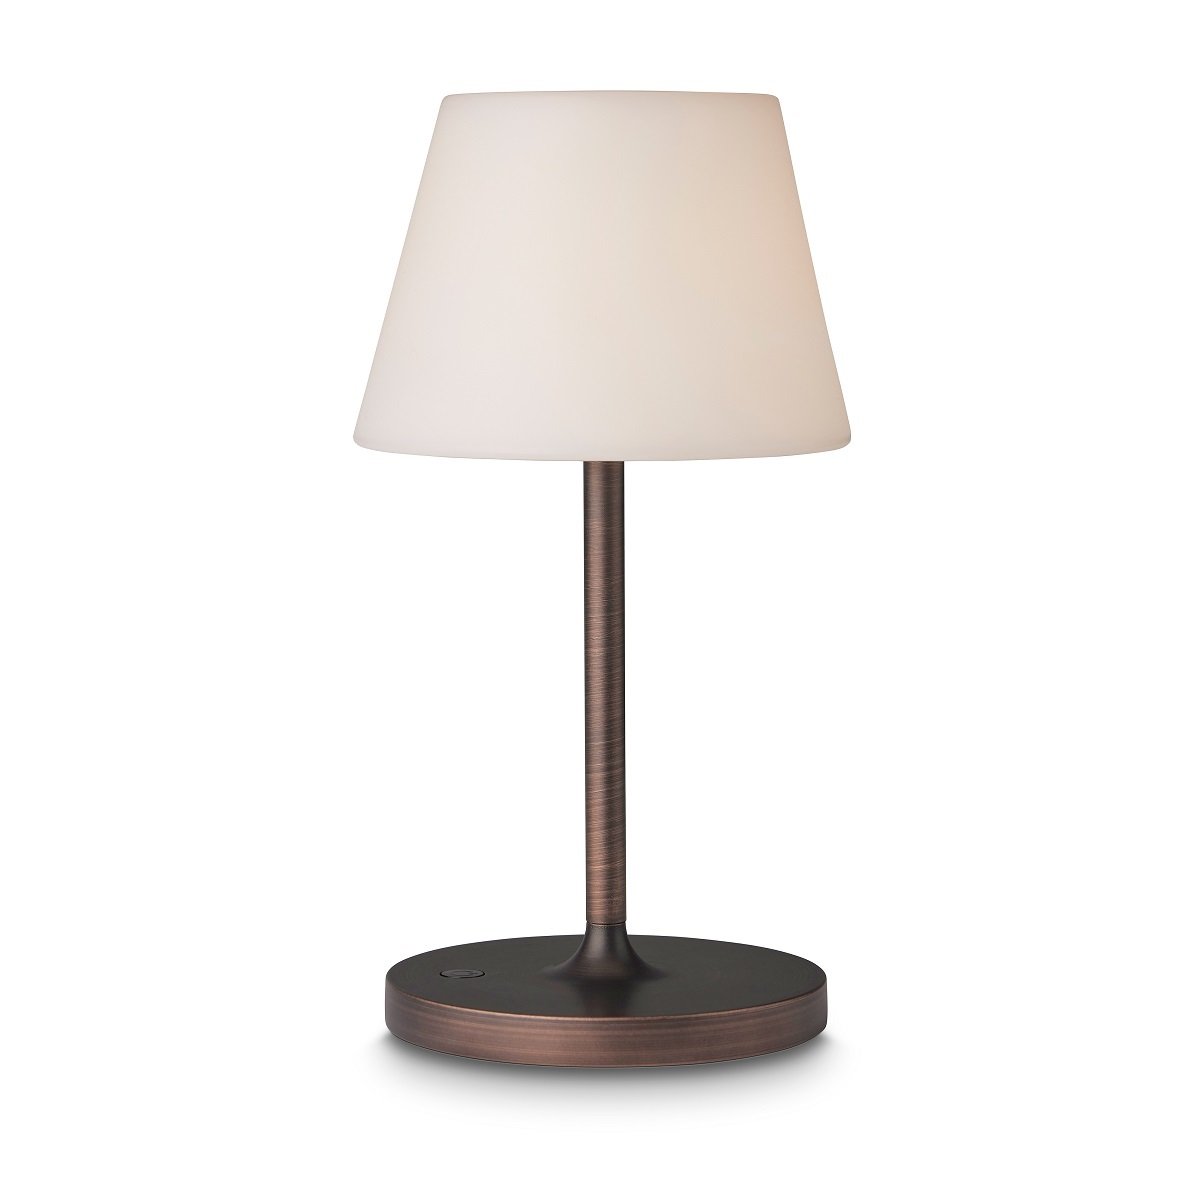 Design kaufen im Halo --> New Lampen Shop online antik Northern & 800940 Tischleuchte Leuchten kupfer 15cm